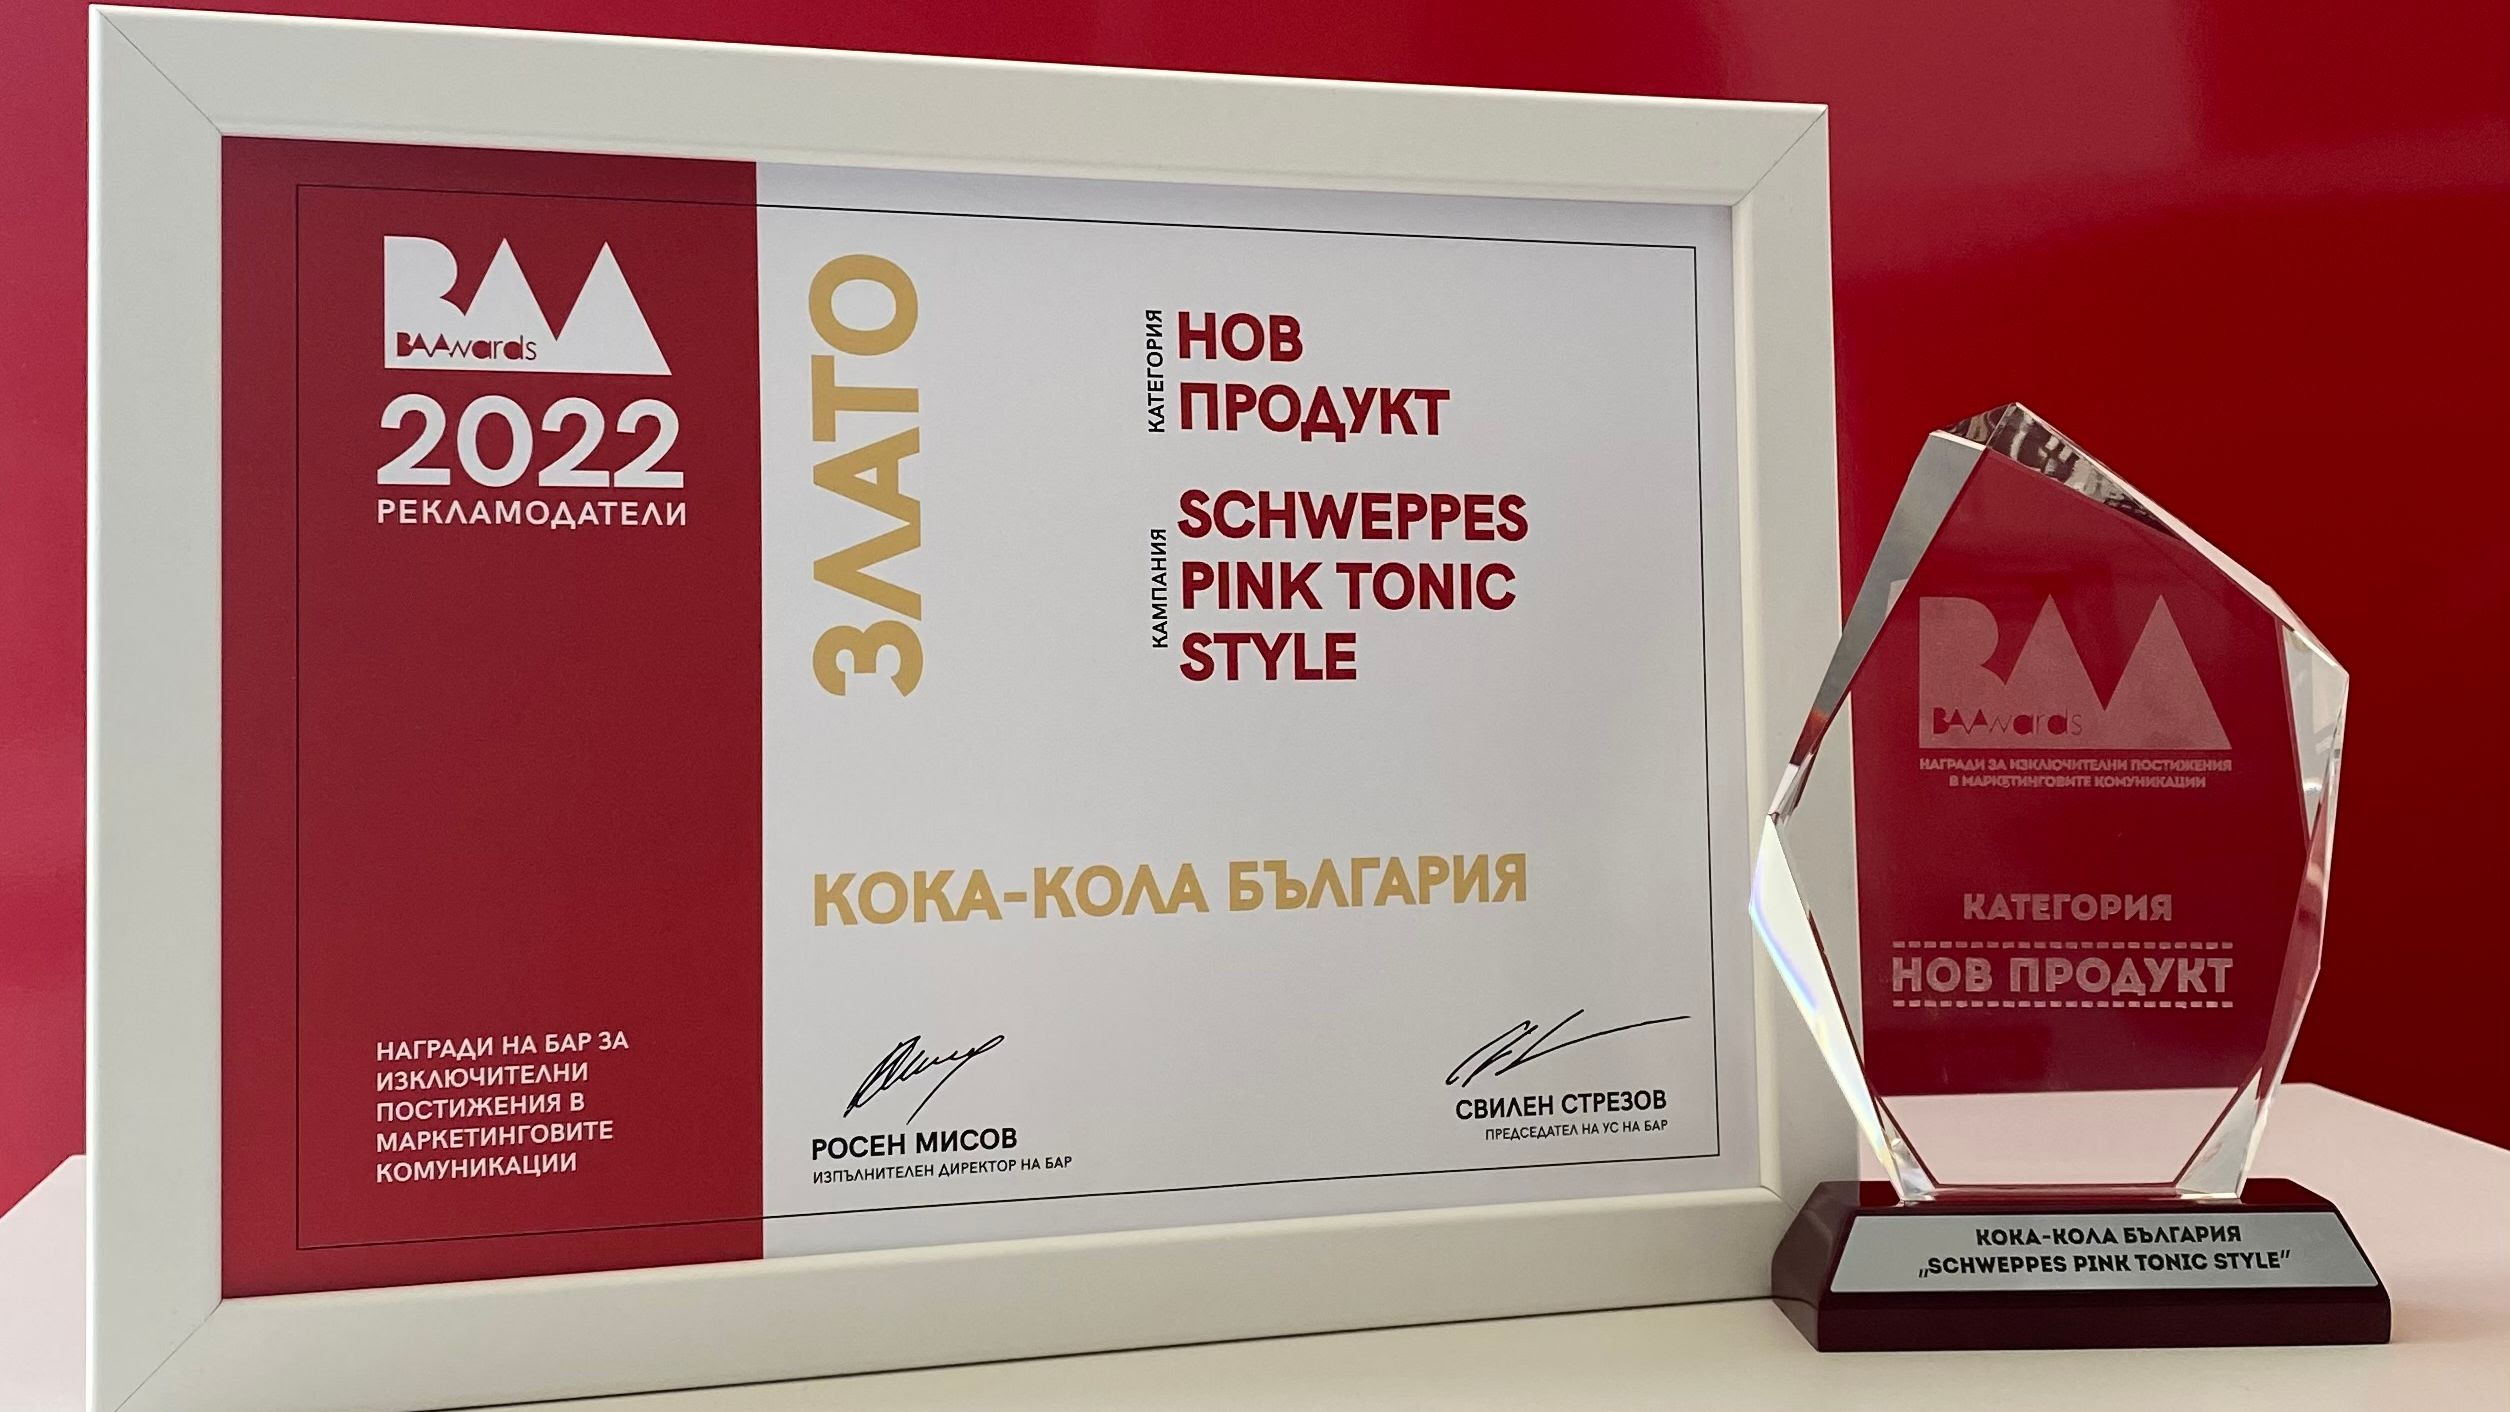 Системата на Кока-Кола в България завоюва златна награда в BAAwards’21-22